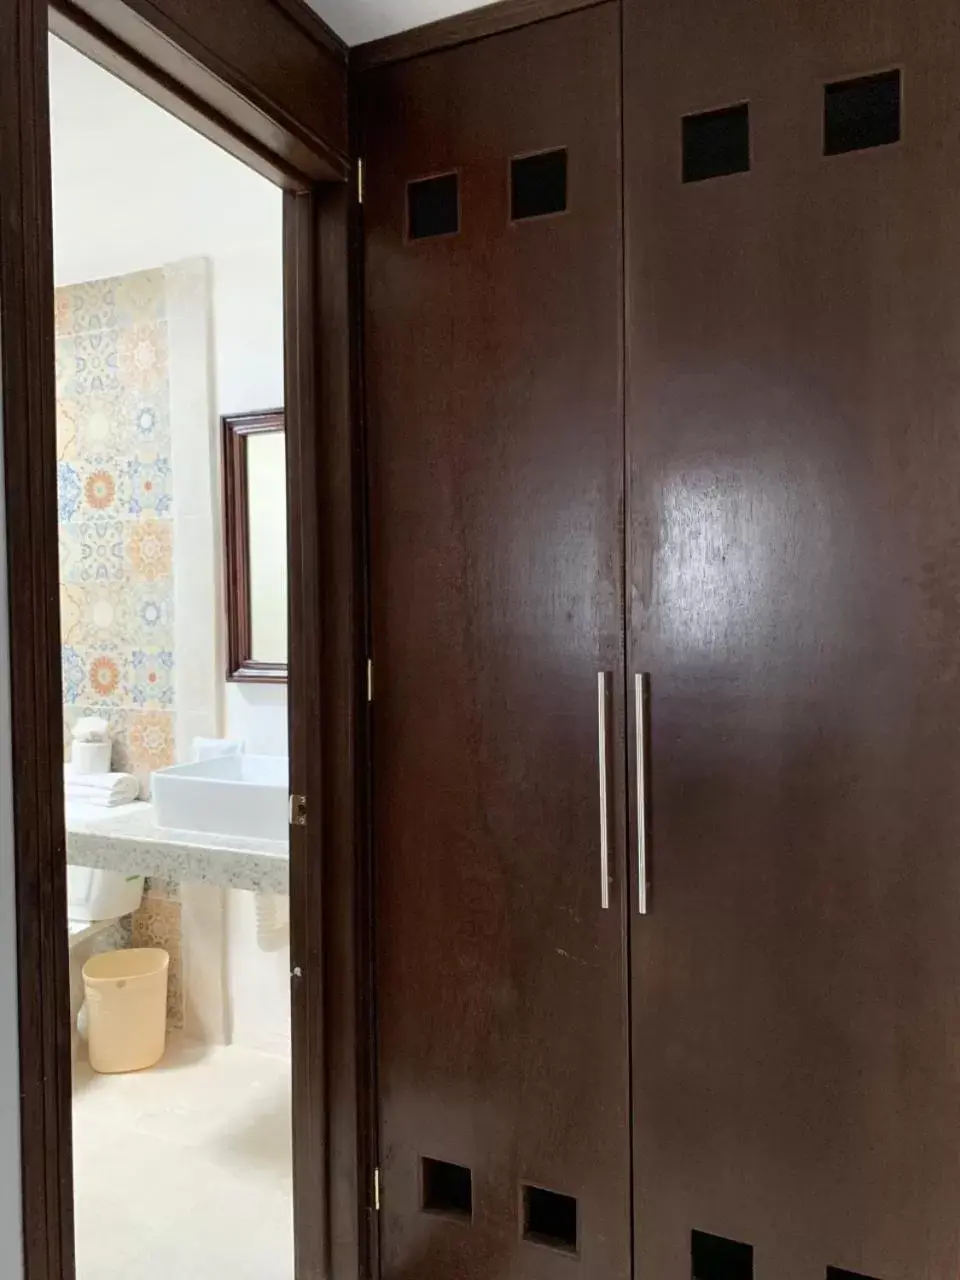 Toilet, Bathroom in Hotel Catedral Valladolid Yucatan